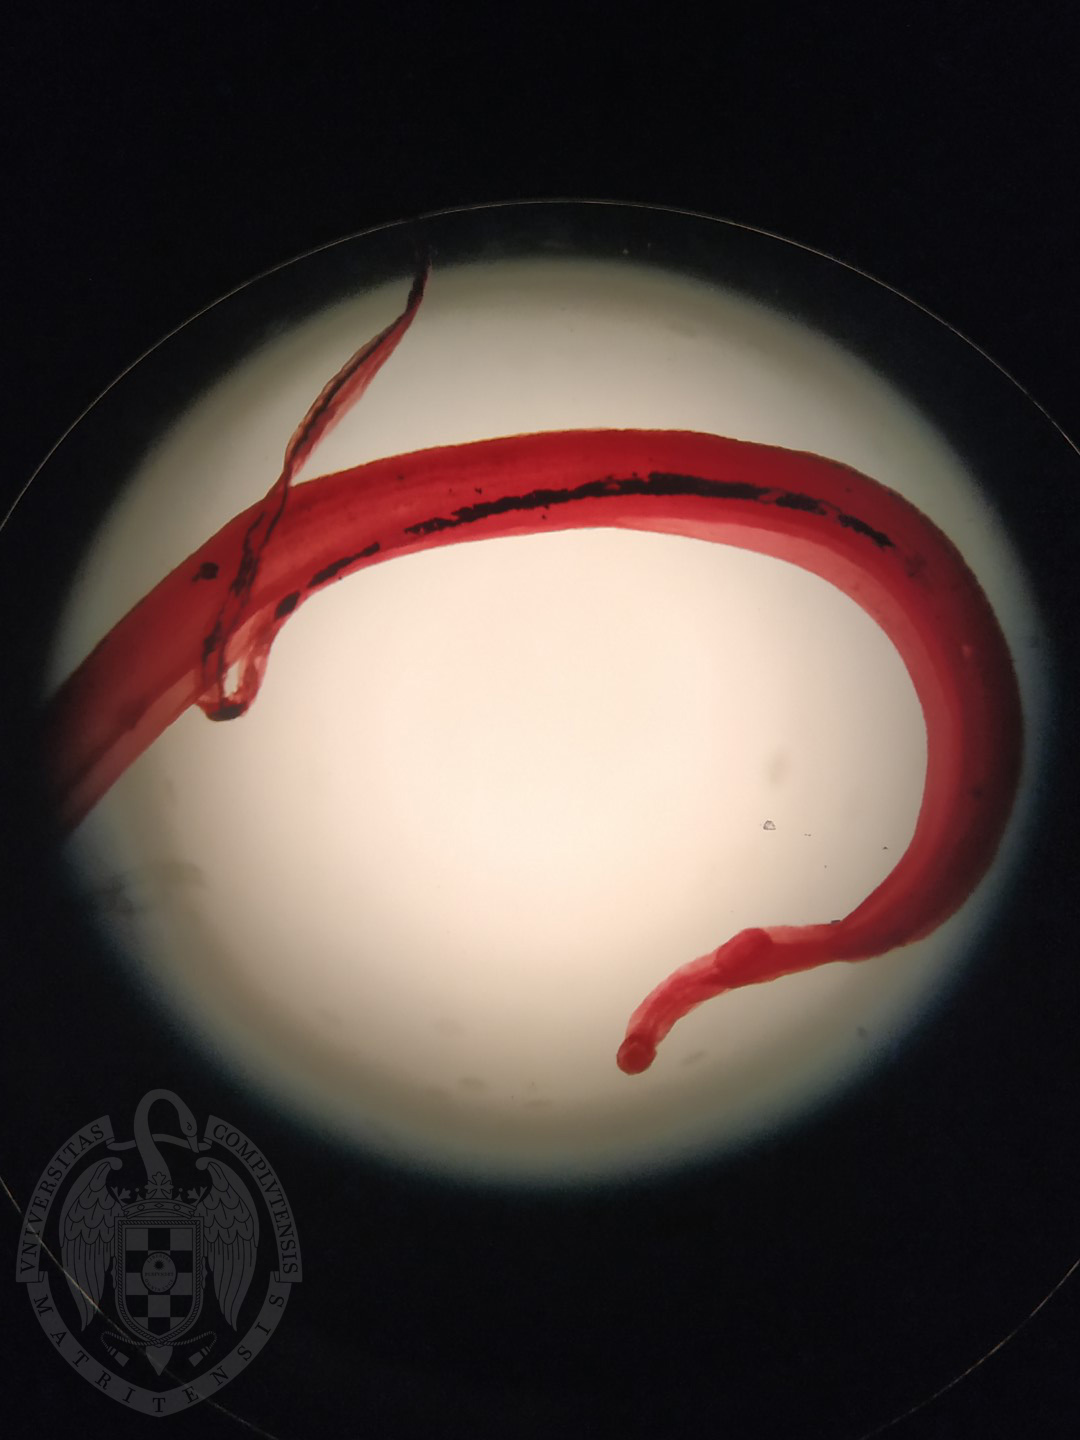 Schistosoma bovis